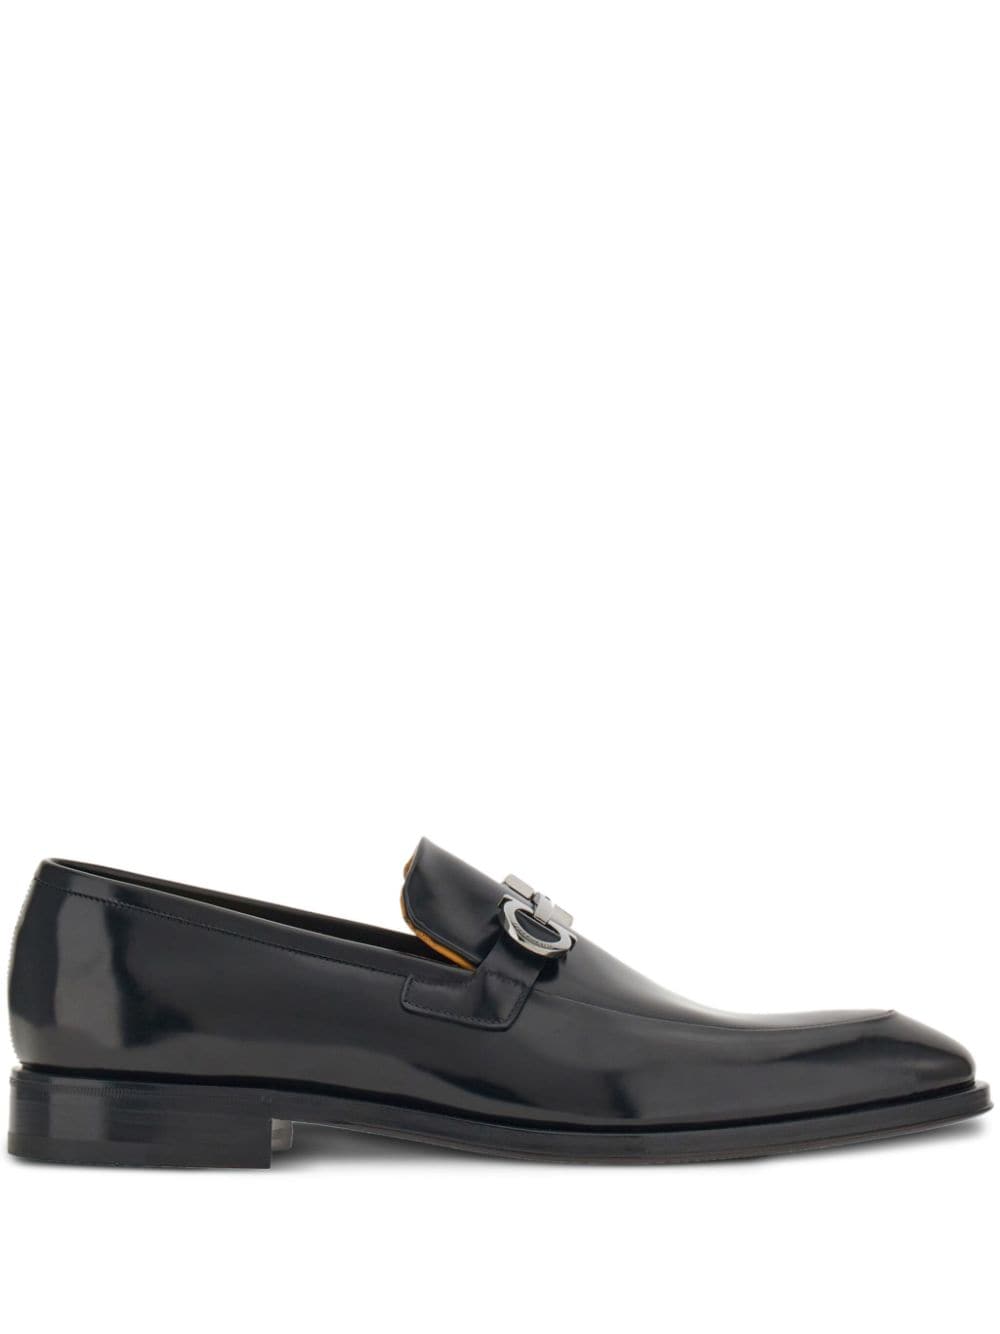 Ferragamo Gancini leather loafers - Black von Ferragamo